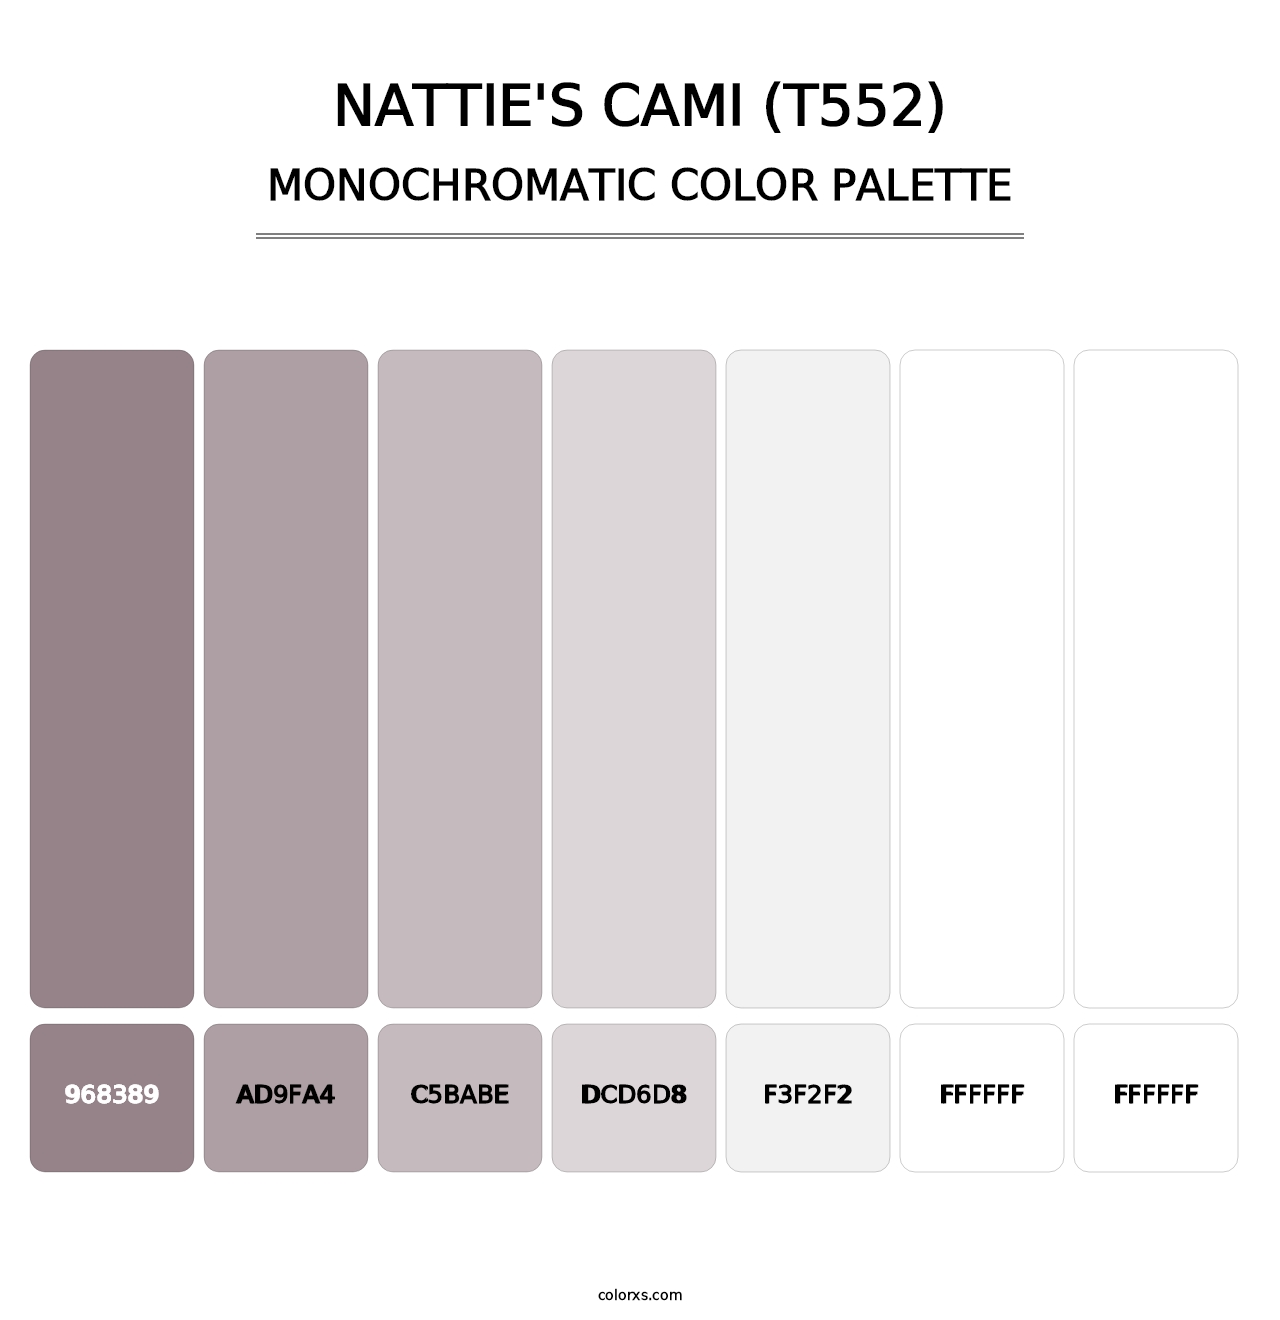 Nattie's Cami (T552) - Monochromatic Color Palette